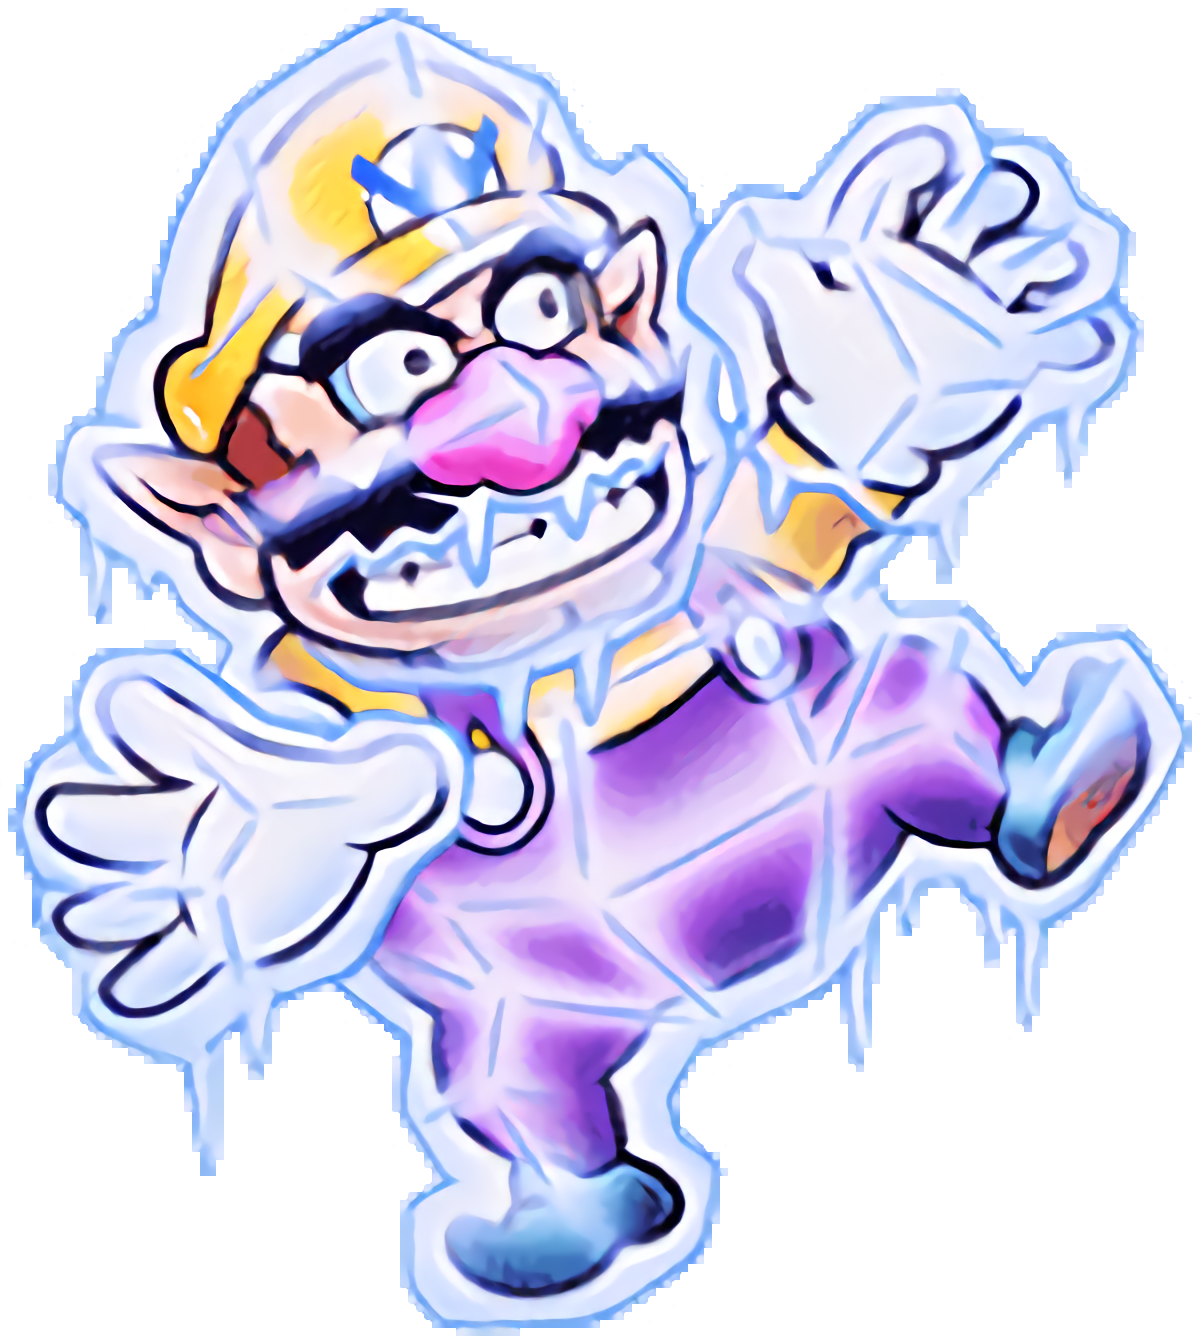 Frozen Wario - Super Mario Wiki, the Mario encyclopedia